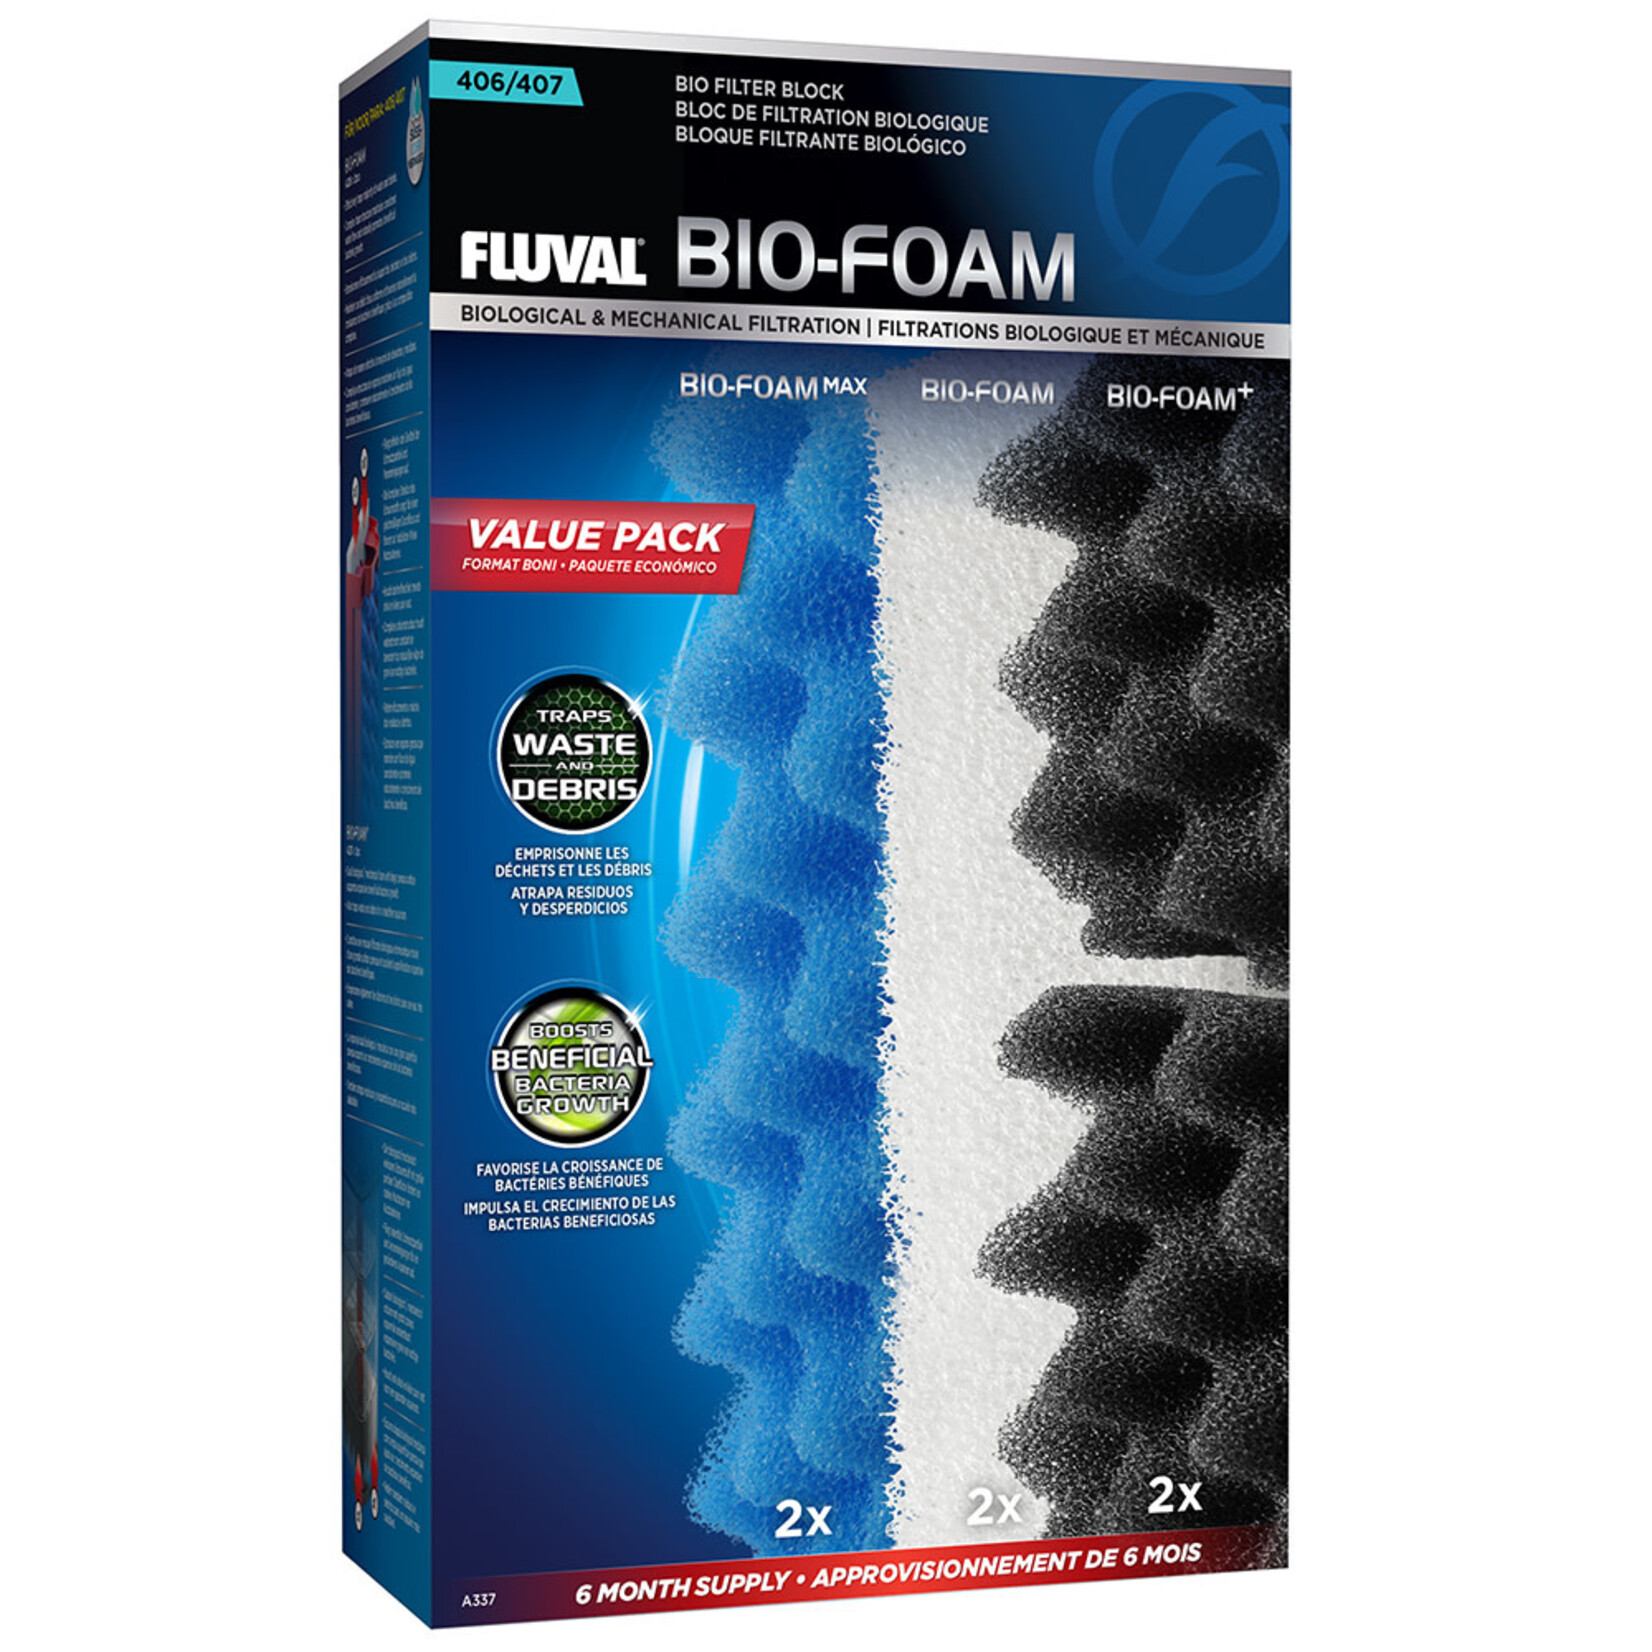 FLUVAL Fluval 407 Bio-Foam Value Pack